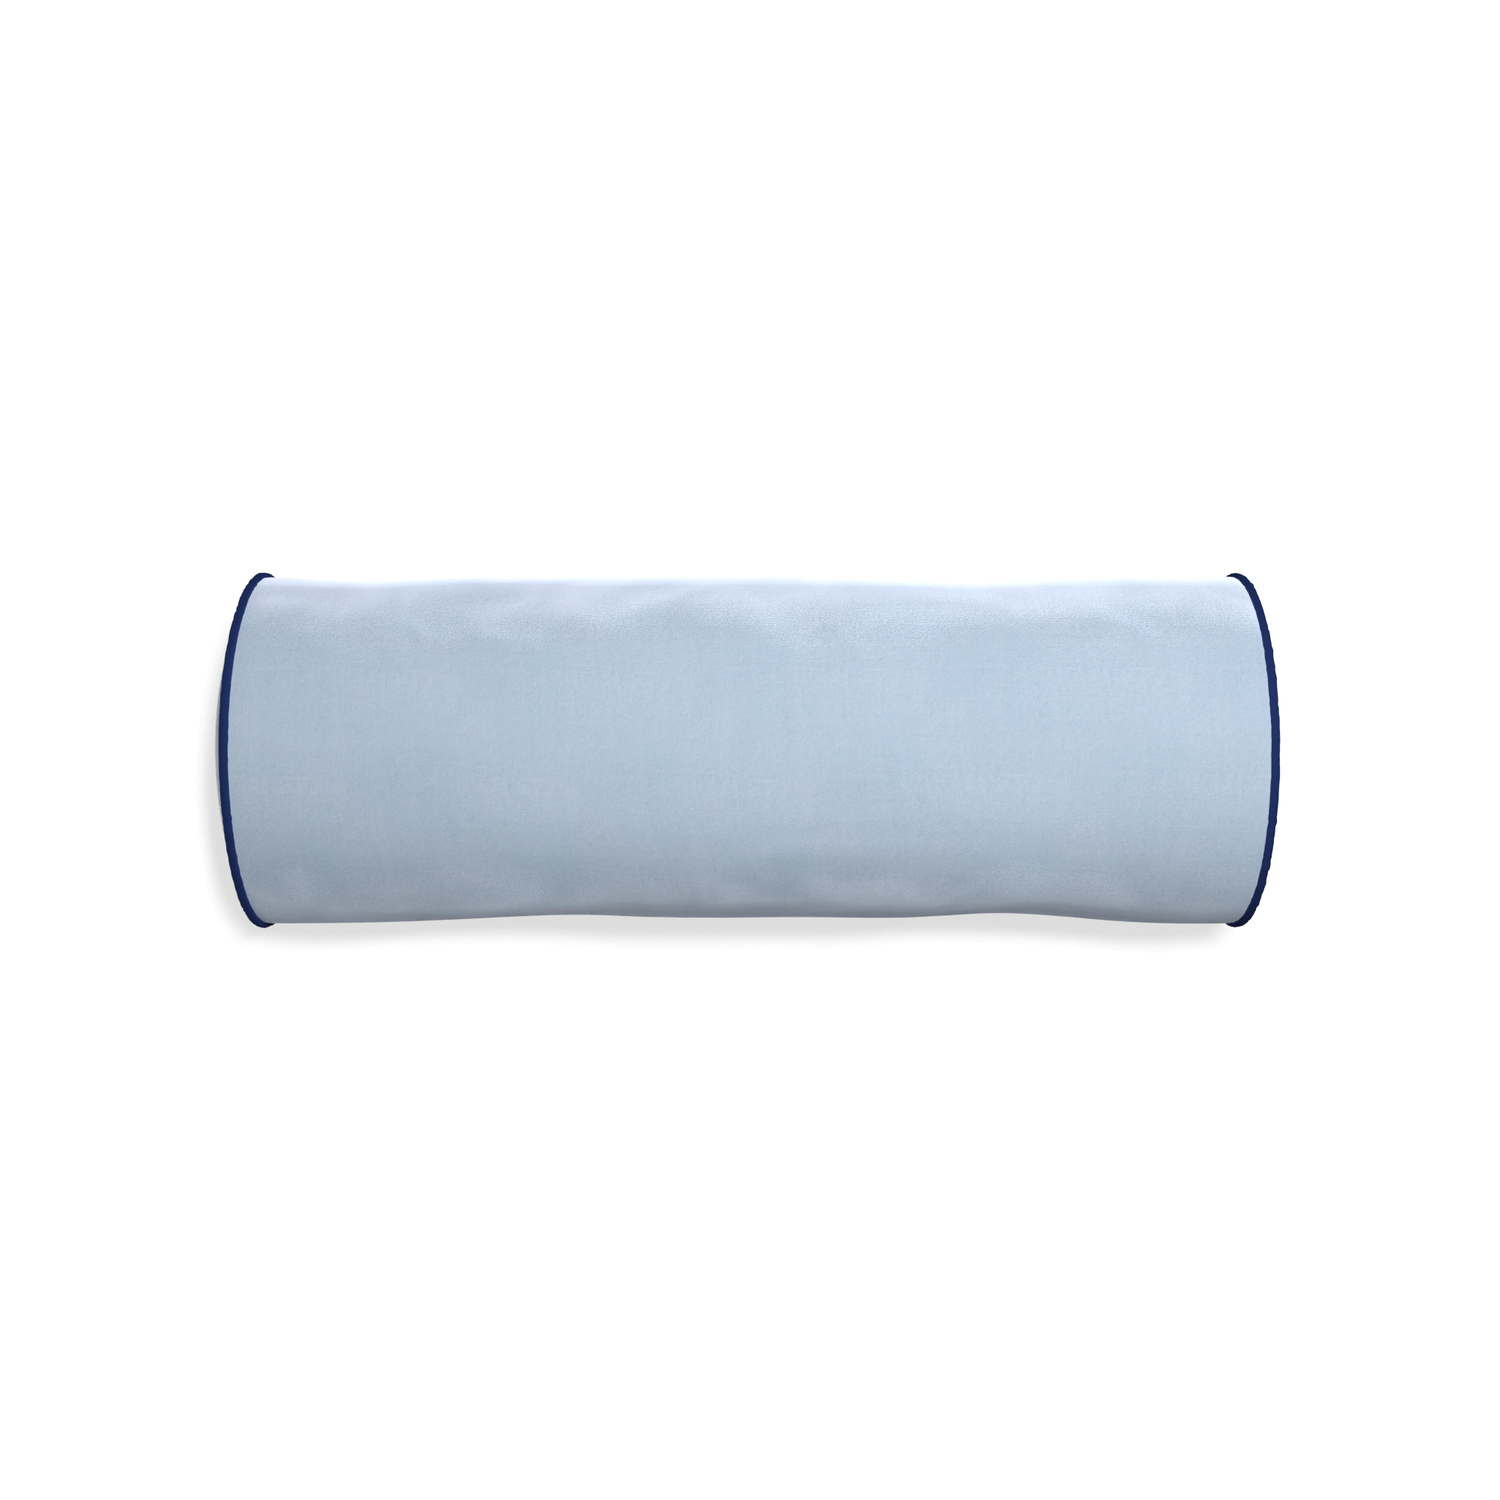 bolster light blue velvet pillow with navy blue piping